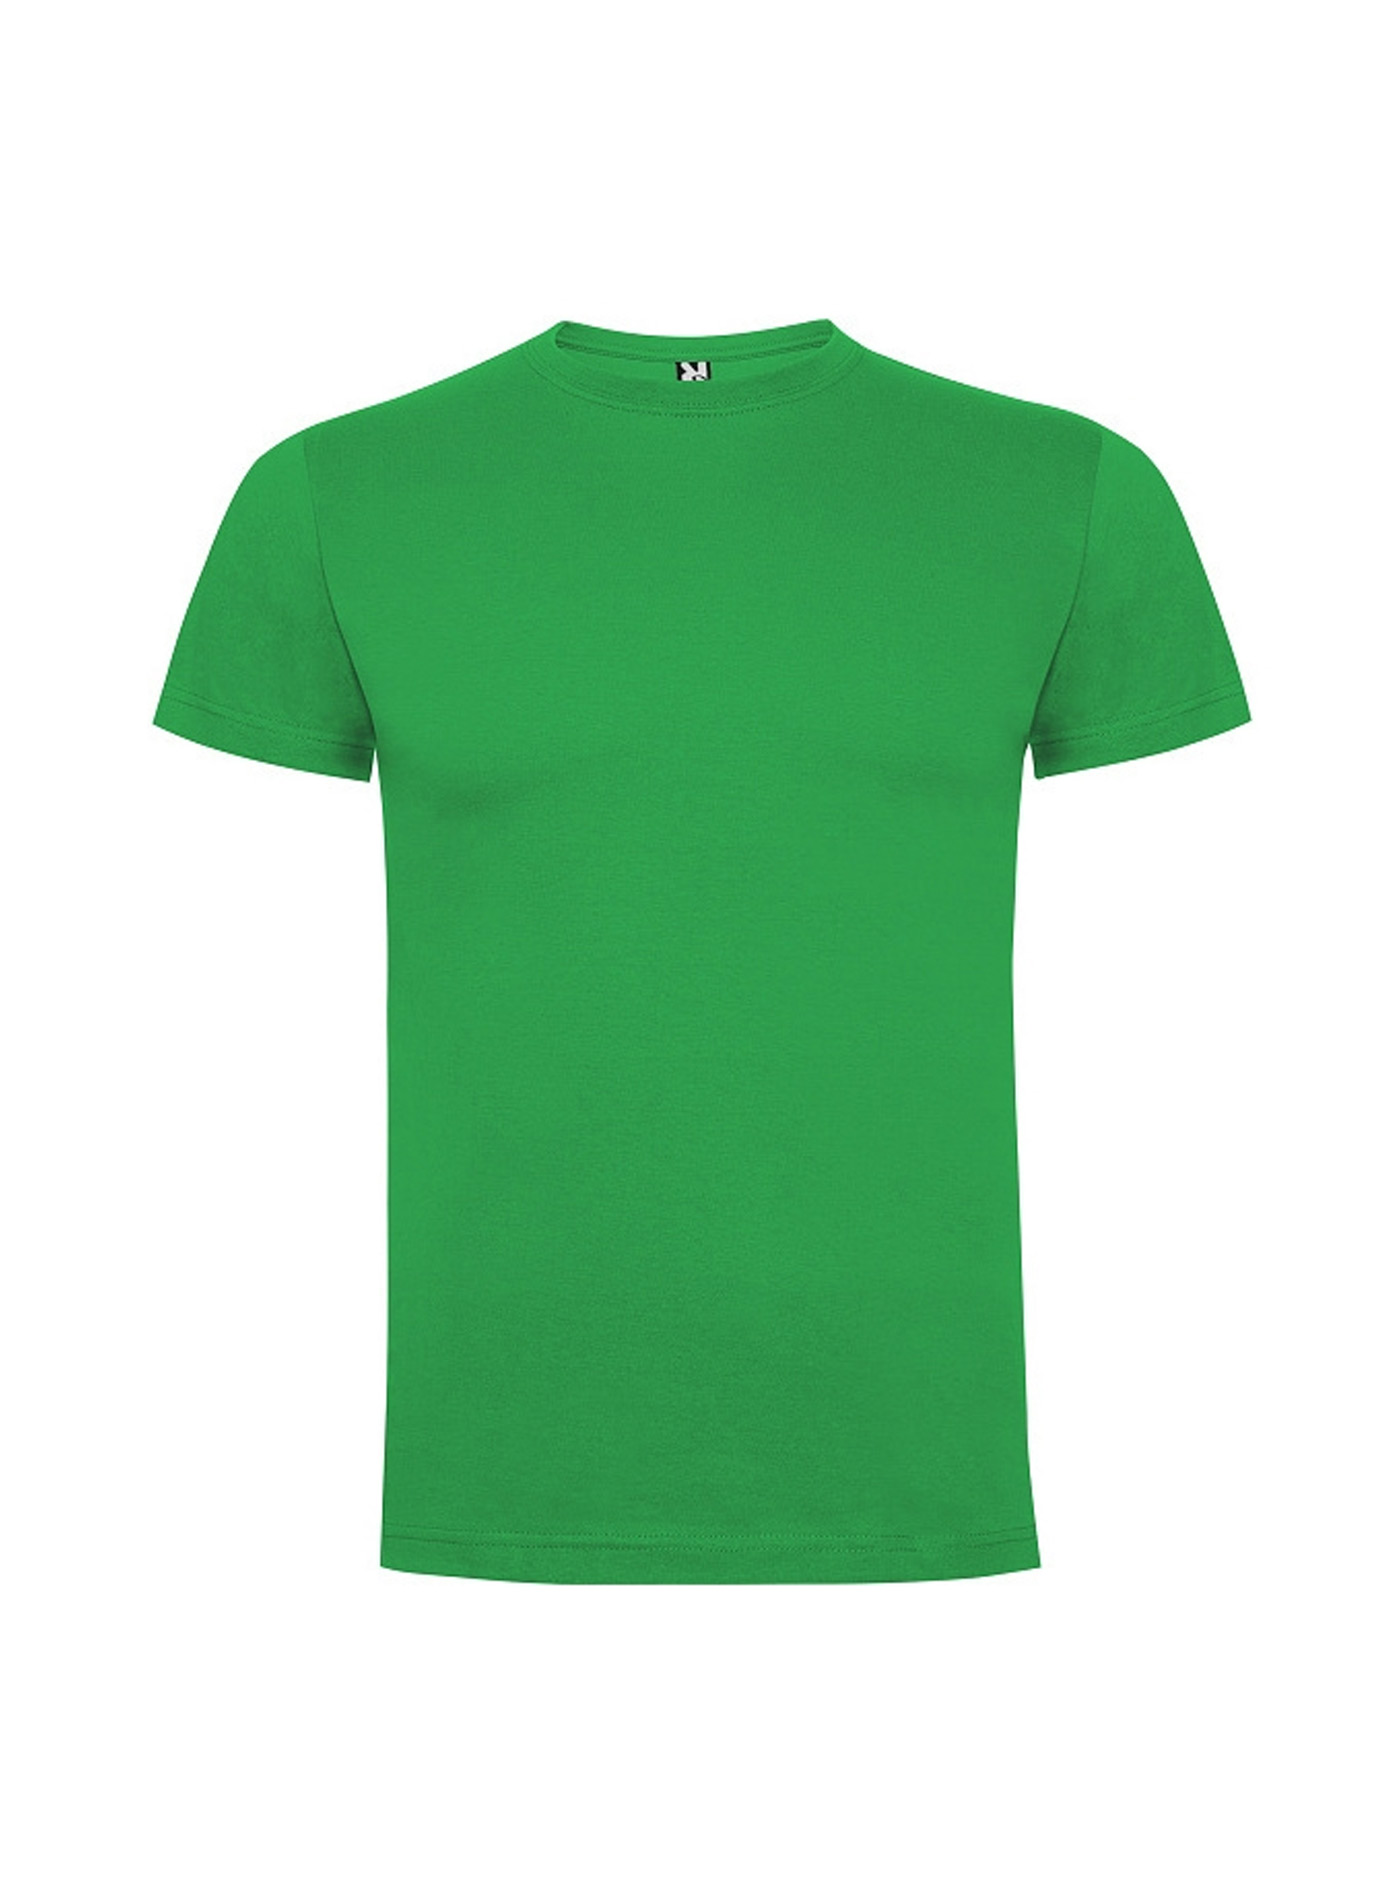 Dětské tričko Roly Dogo premium - Irská zelená 3-4